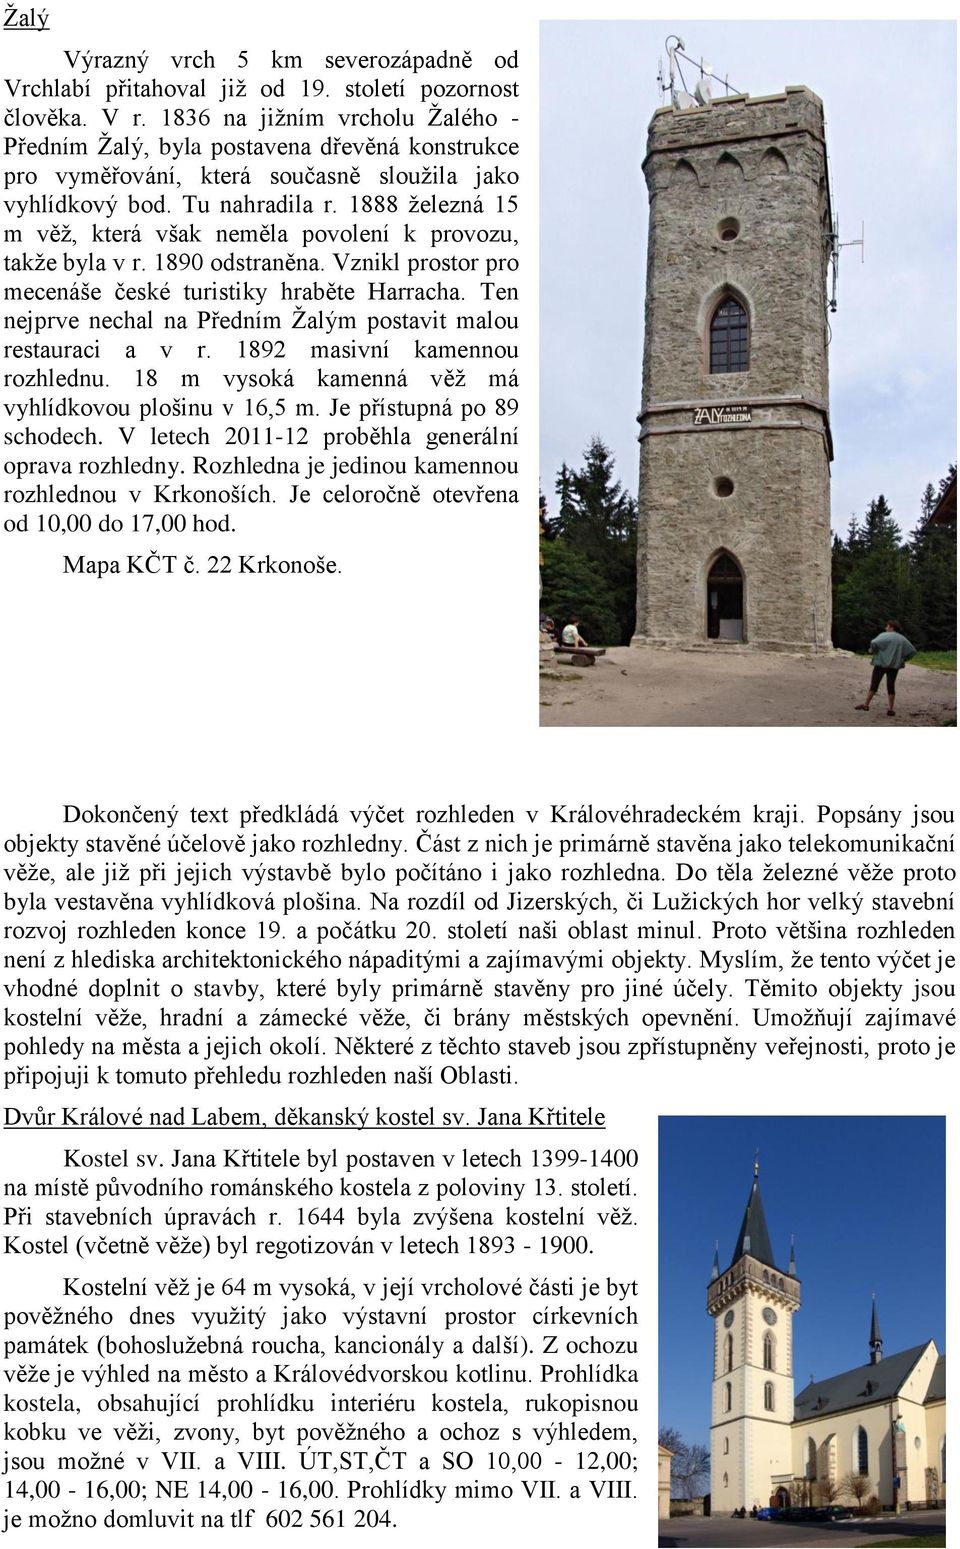 1888 železná 15 m věž, která však neměla povolení k provozu, takže byla v r. 1890 odstraněna. Vznikl prostor pro mecenáše české turistiky hraběte Harracha.